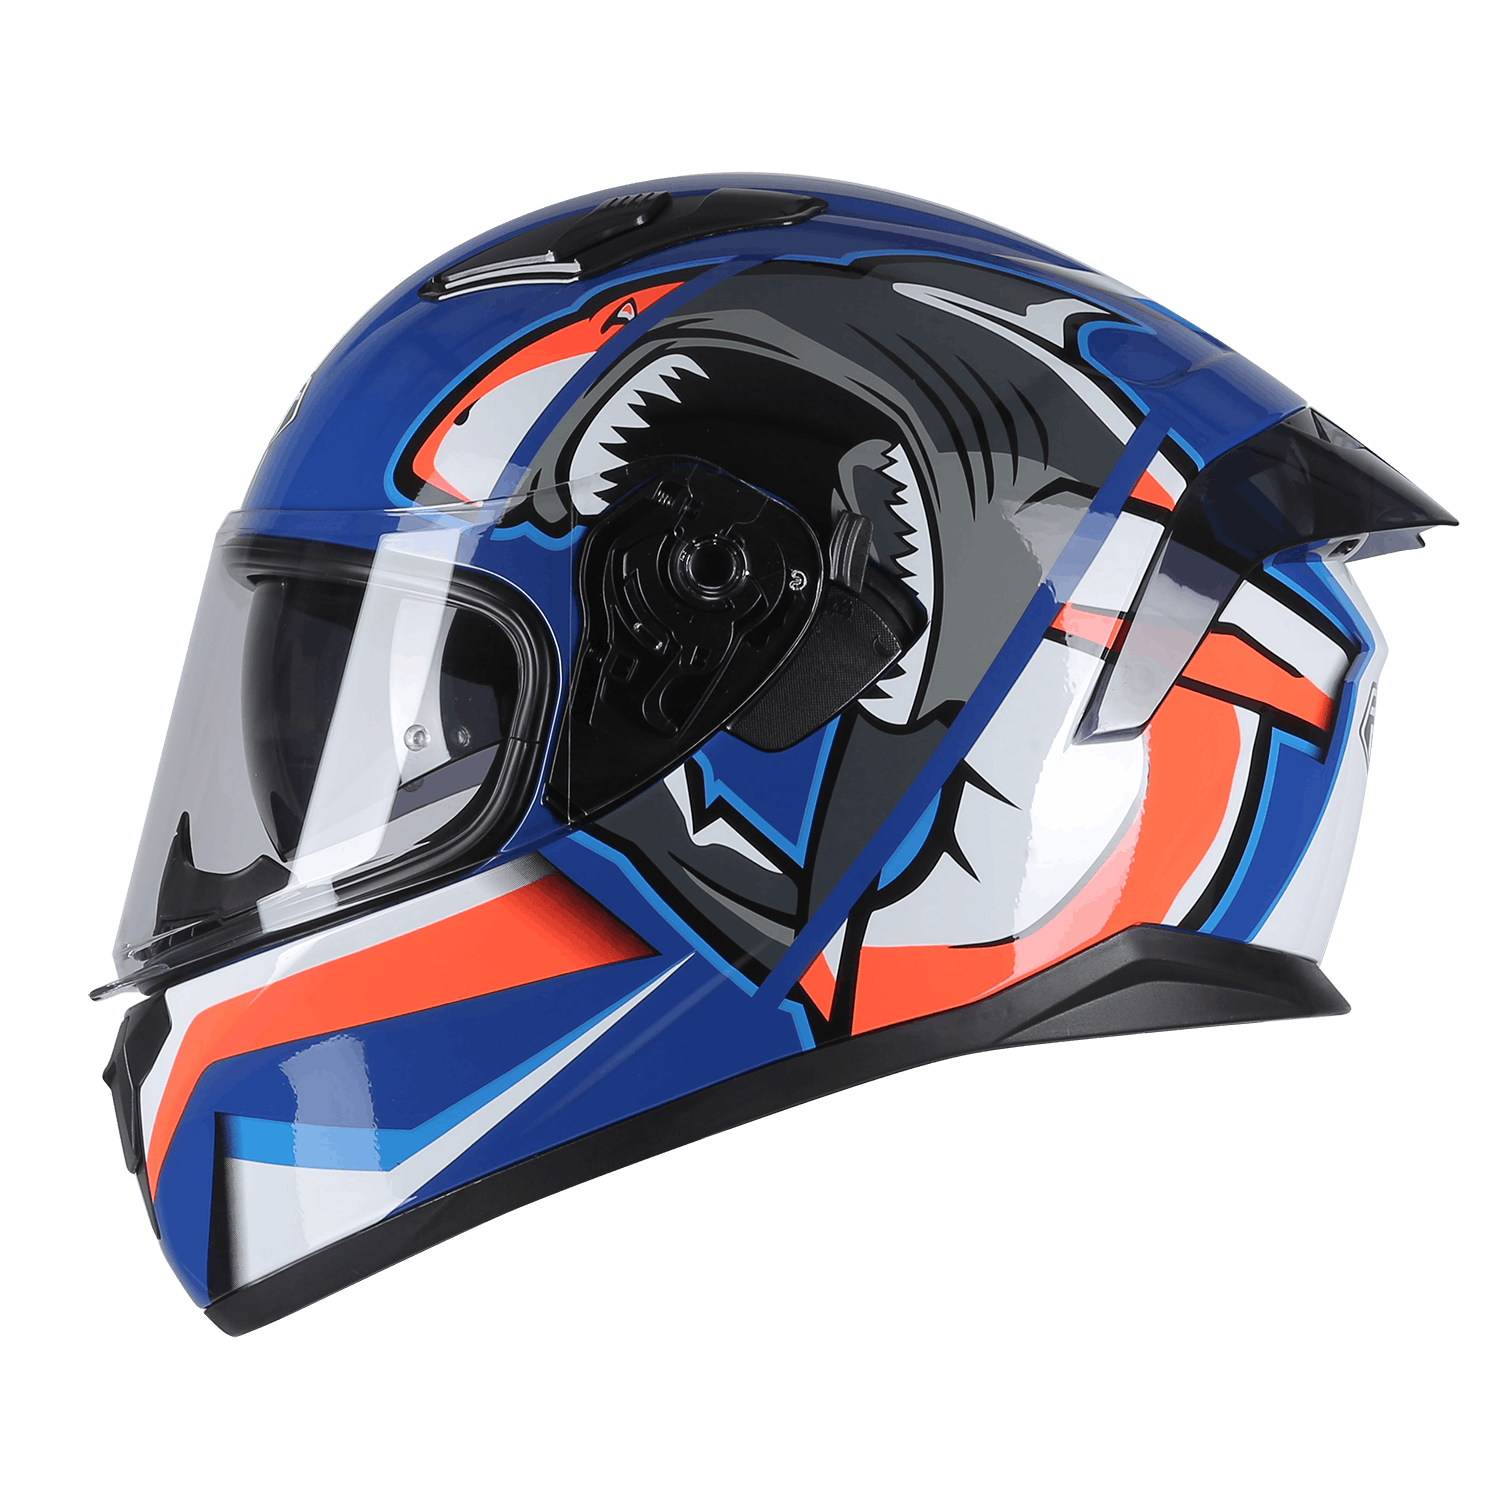 PILOT - Κράνος Pilot Fighter SV Shark μπλε/κόκκινο gloss